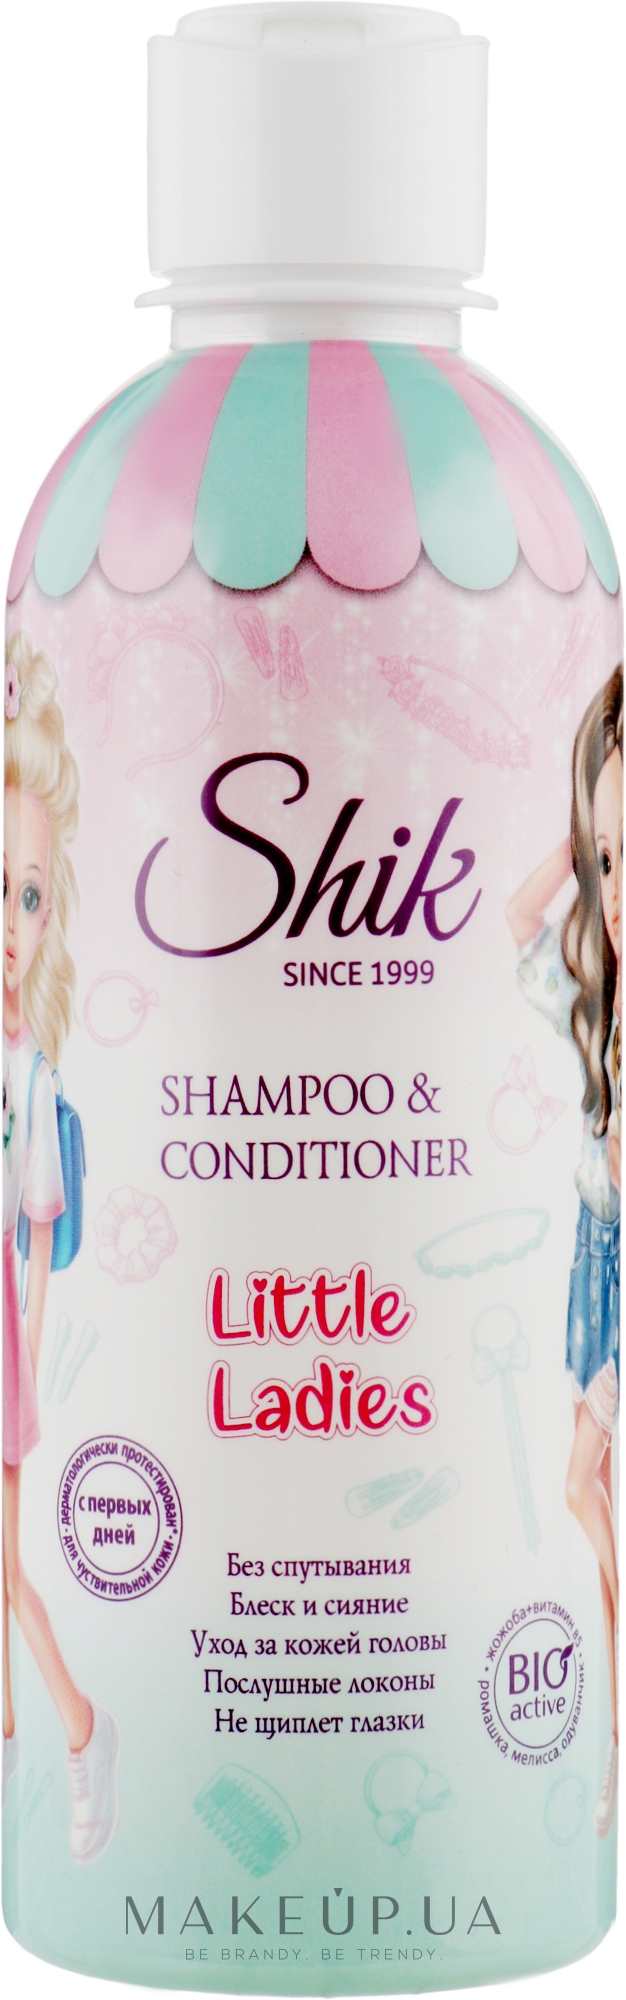 Шампунь-кондиционер 2 в 1 для девочек - Shik Little Ladies Shampoo & Conditioner — фото 300ml